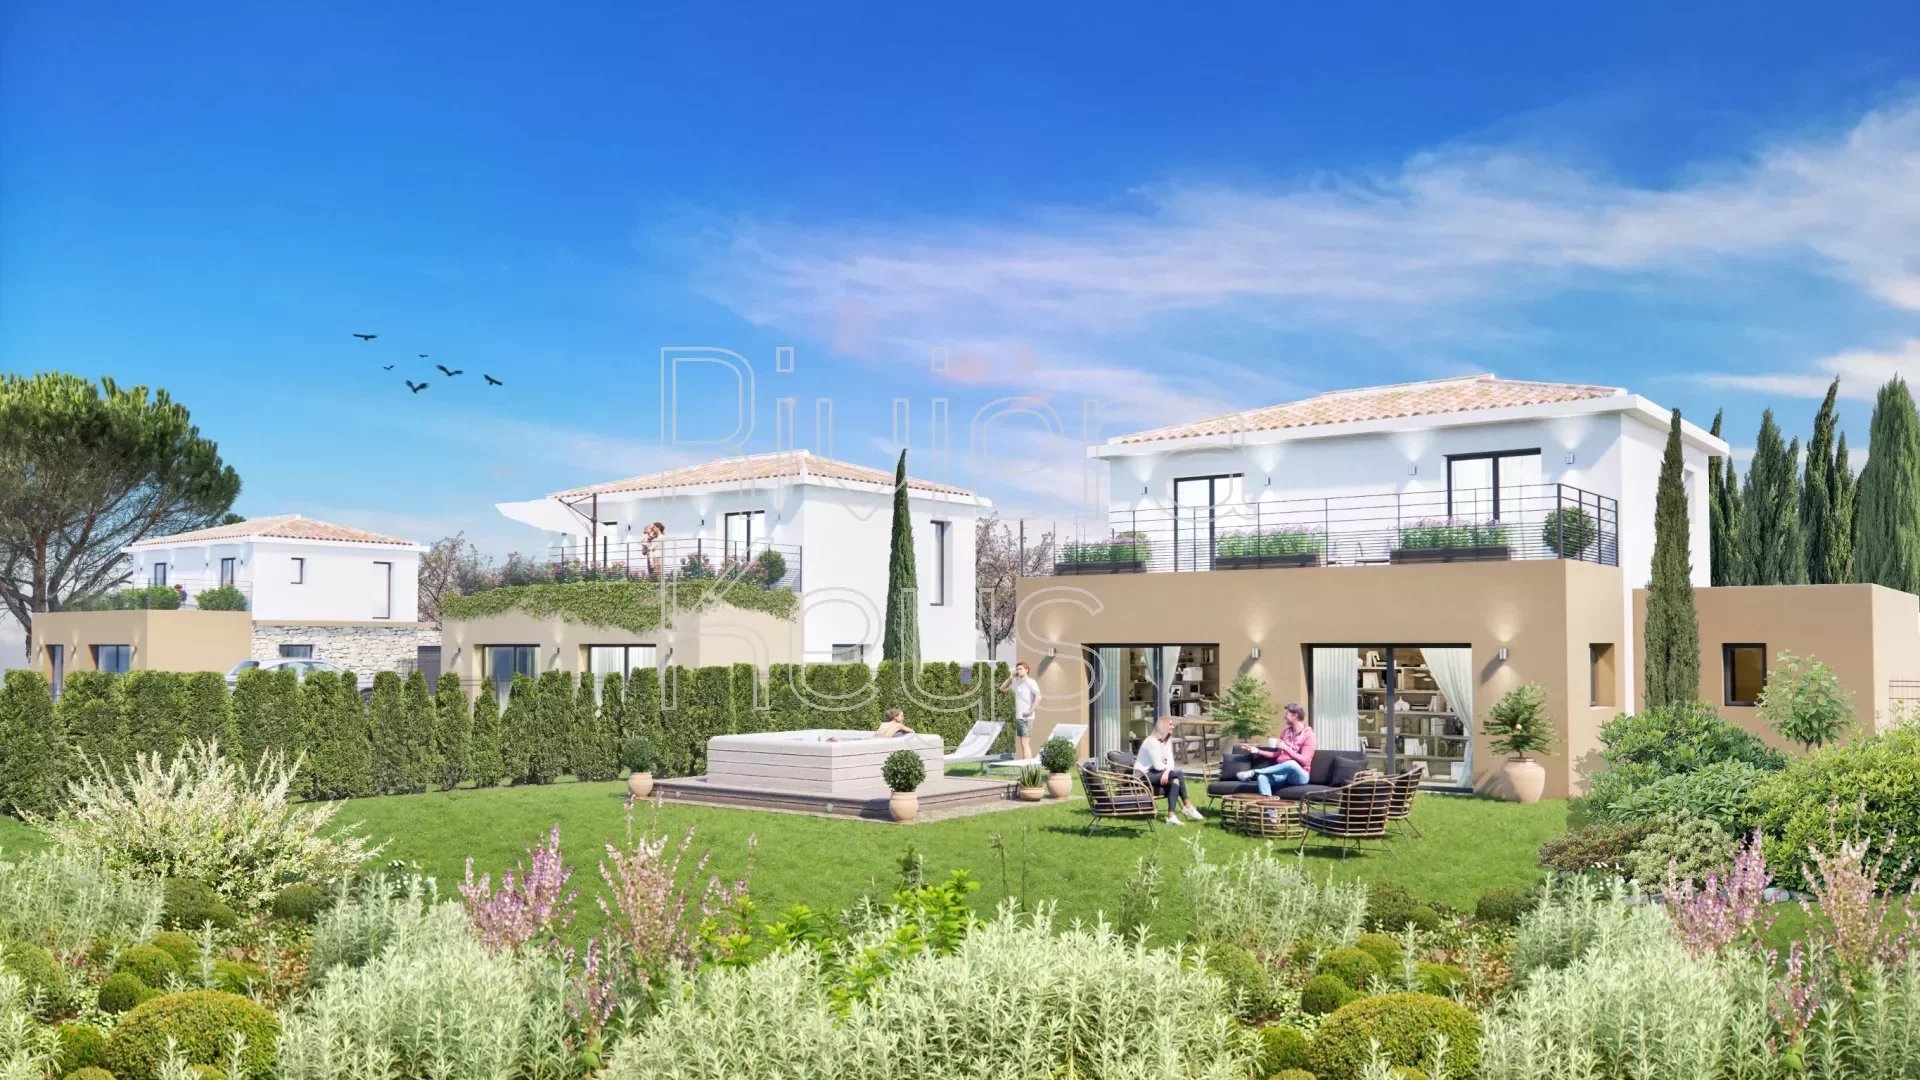 Programme neuf de 6 villas individuelles, calme, jardin clos, à Puget-sur-Argens (4 pièces, 111 à 117 m²)